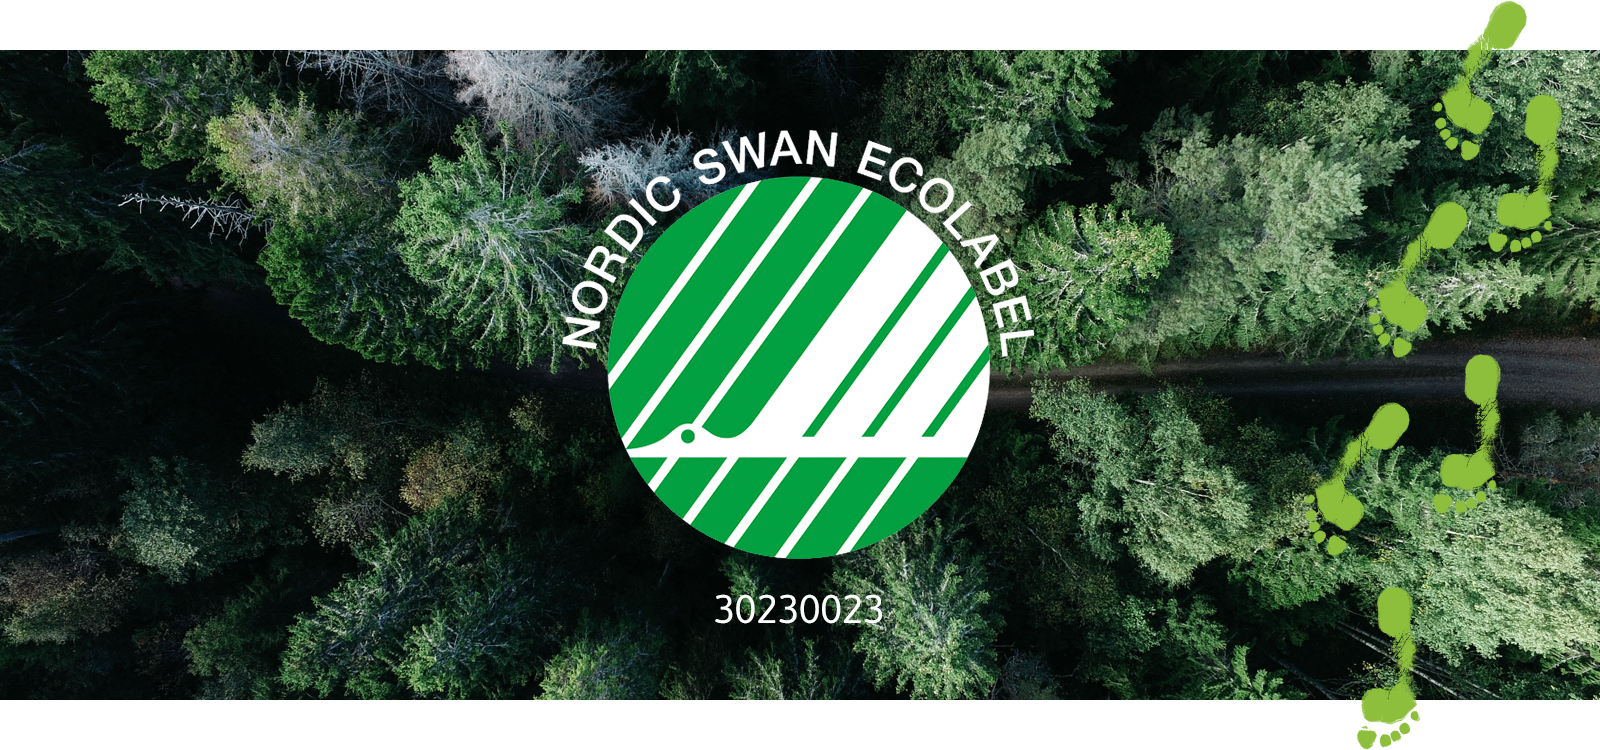 Översiktsbild över en barrskog med en korsande stig. I mitten av bilden visas den gröna och vita Svanen-loggan med en flygande svan.